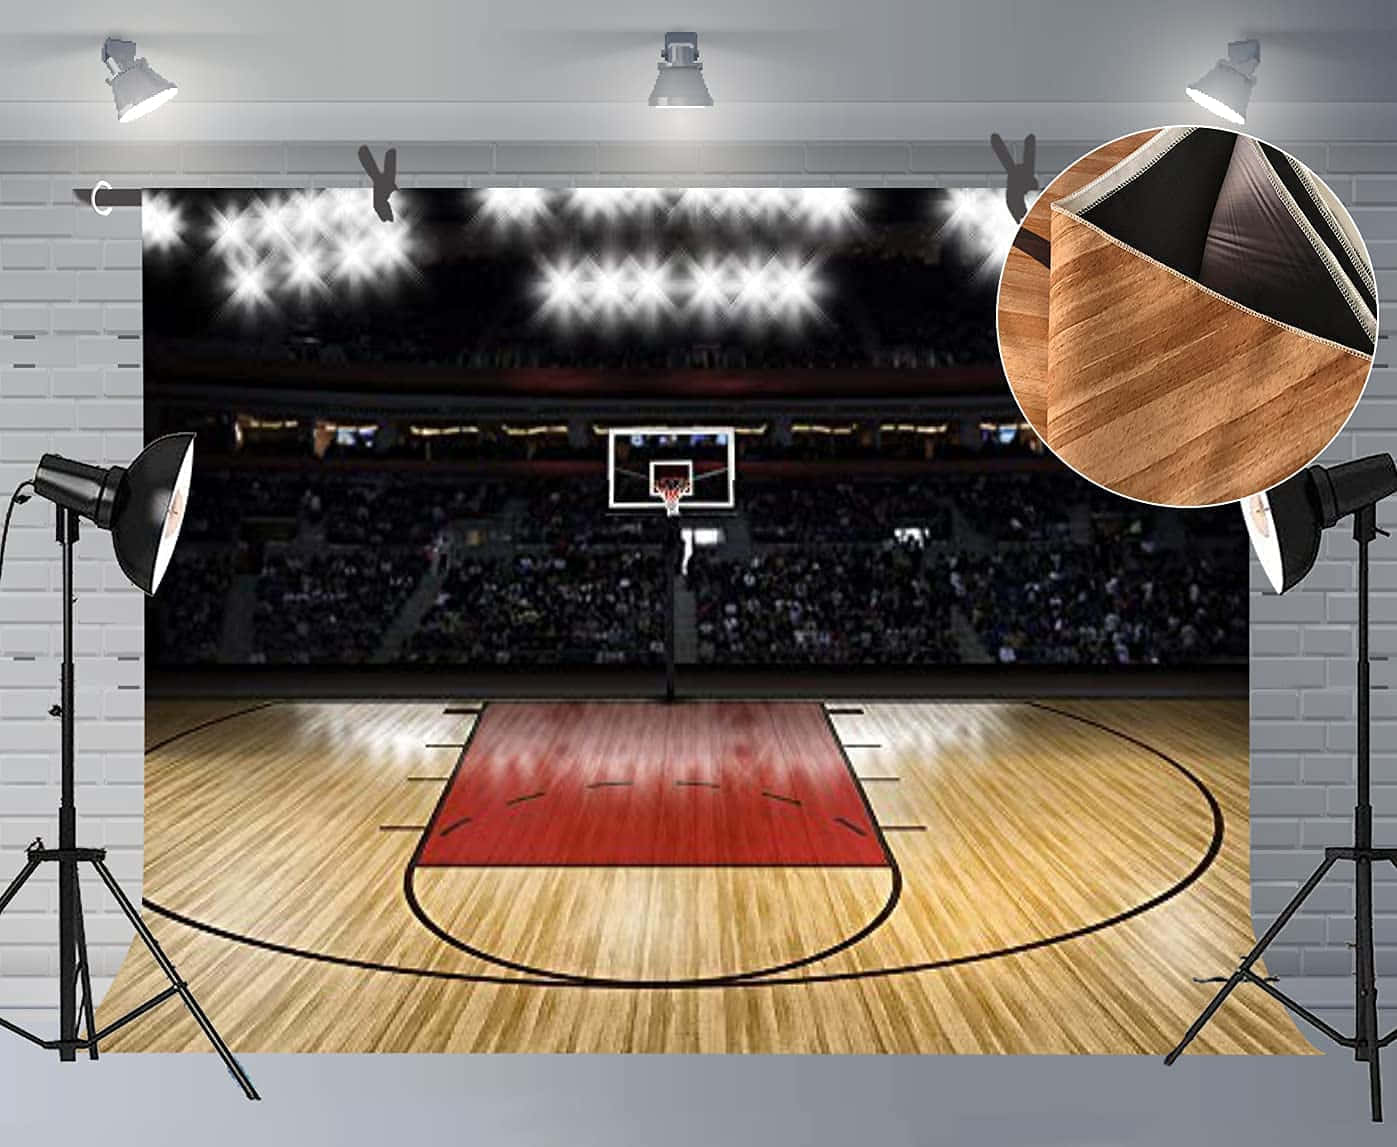 Campoda Basket Perfettamente Curato All'interno Di Una Palestra